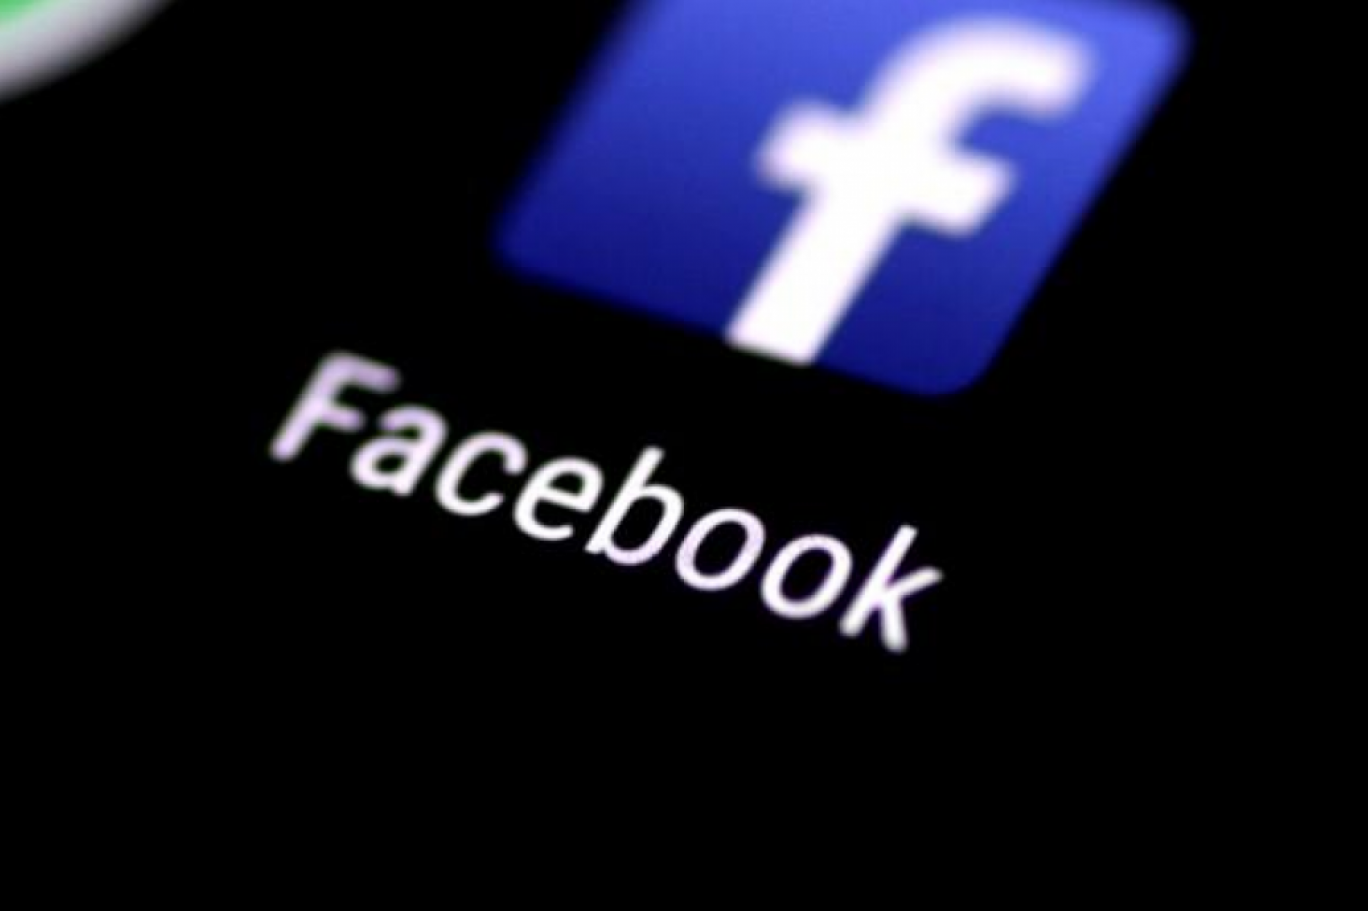 فیس بک کا لاکھوں صارفین کے پاسورڈ سادہ ٹیکسٹ فائل میں جمع رکھنے کا اعتراف |  Independent Urdu